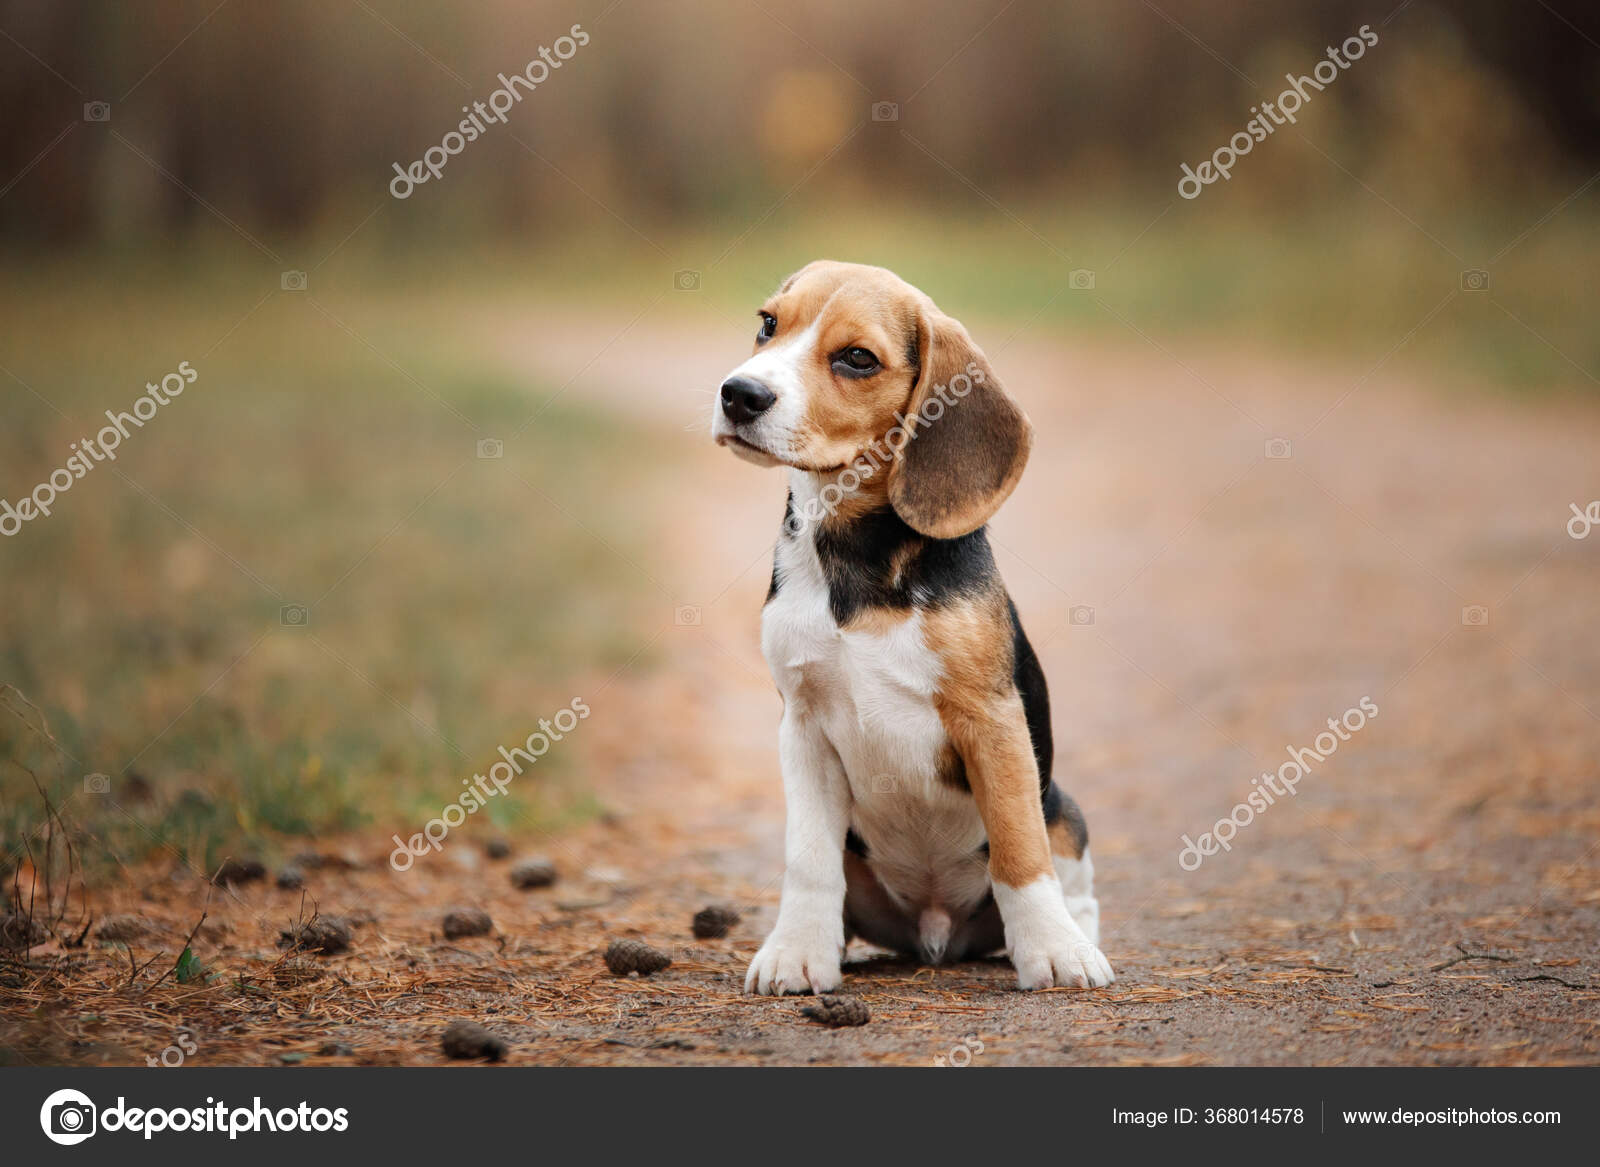 Panorama Arabiske Sarabo Udelukke Dog Nature Park Beagle Puppy Pet Walk Stock Photo by ©averyanova 368014578